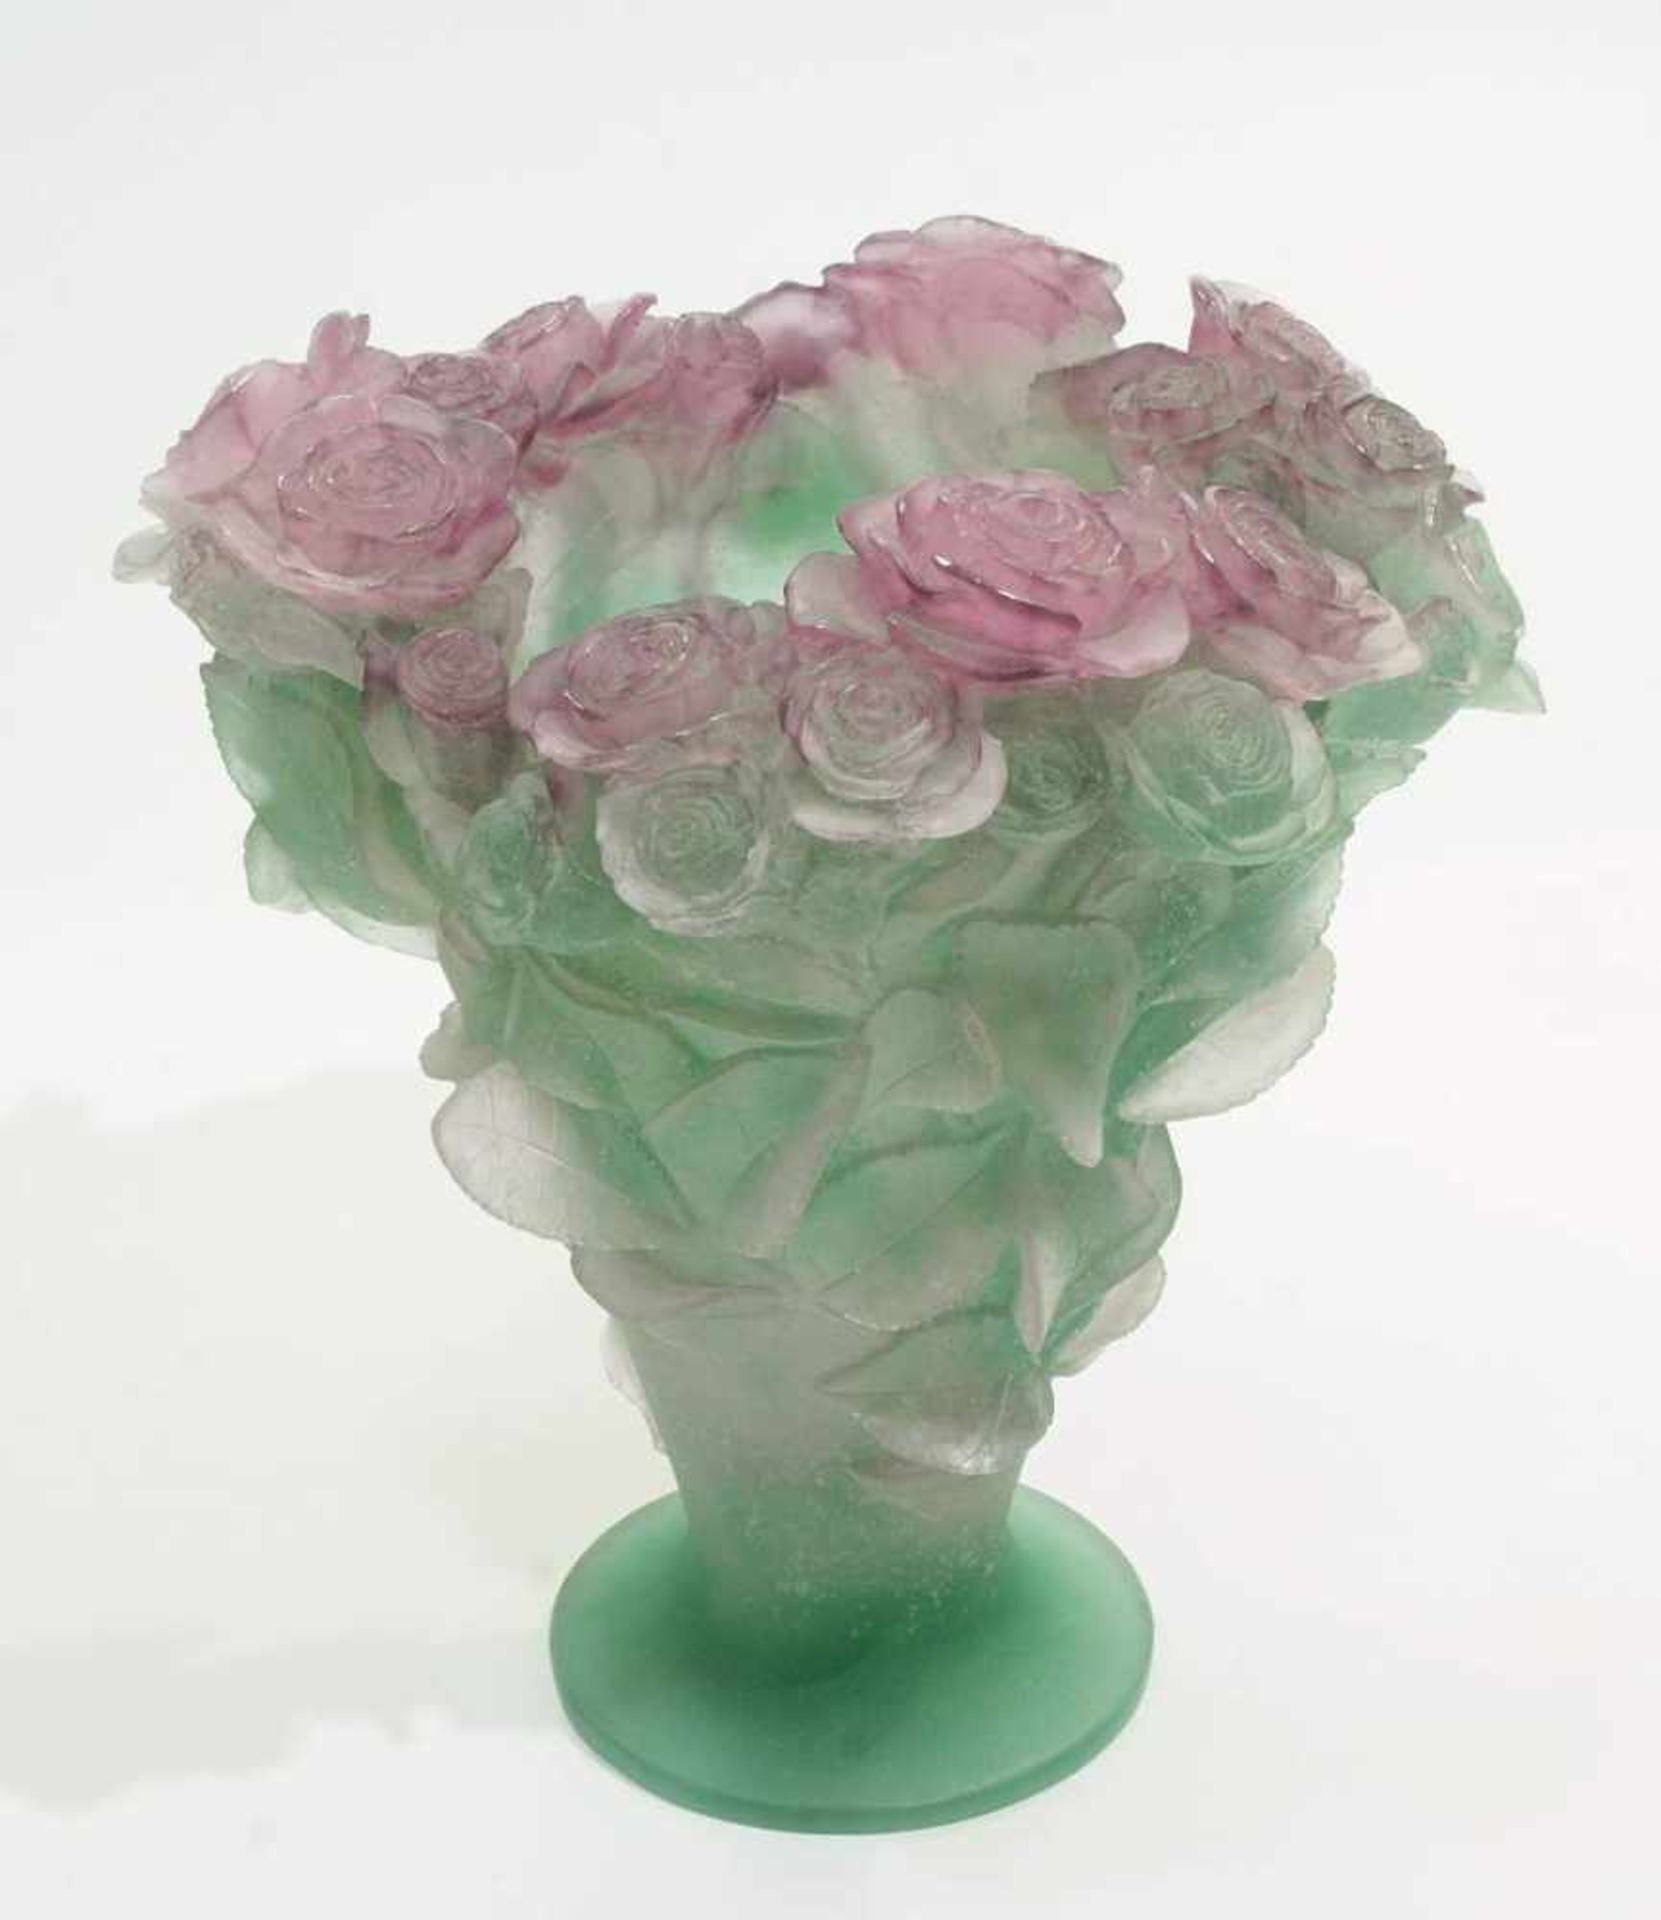 DAUM Pate-de-Verre "Roses" Vase. France. DAUM Pate-de-Verre "Roses" Vase. France. 20. Jahrhundert. - Bild 2 aus 6